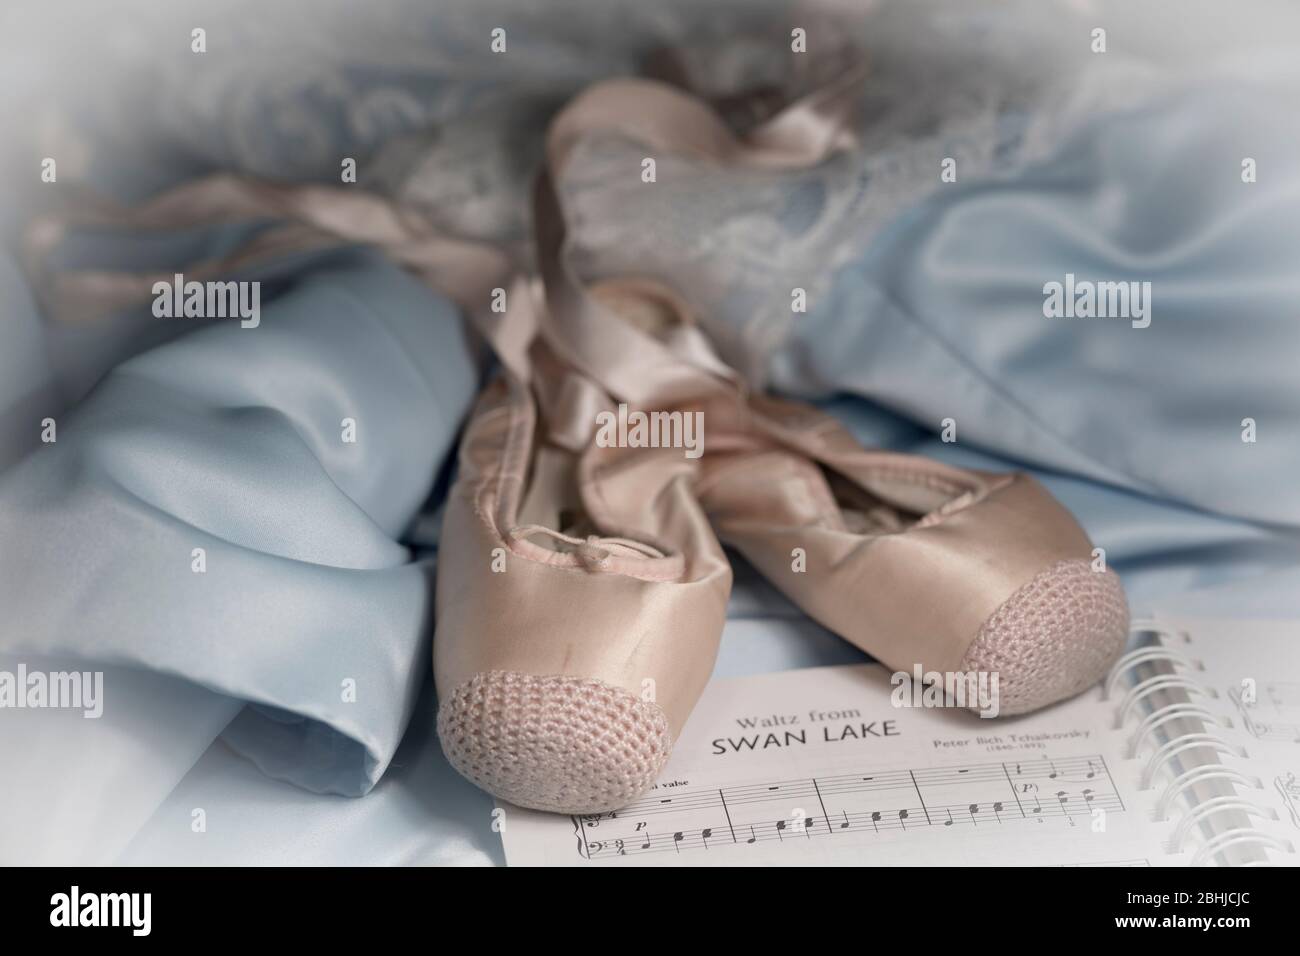 Nostalgica, sognante primo piano di scarpe da balletto da prove, costume da pizzo e musica da spartiti di Tchaikovsky Swan Lake. Balletto danzare ricordi d'infanzia. Foto Stock